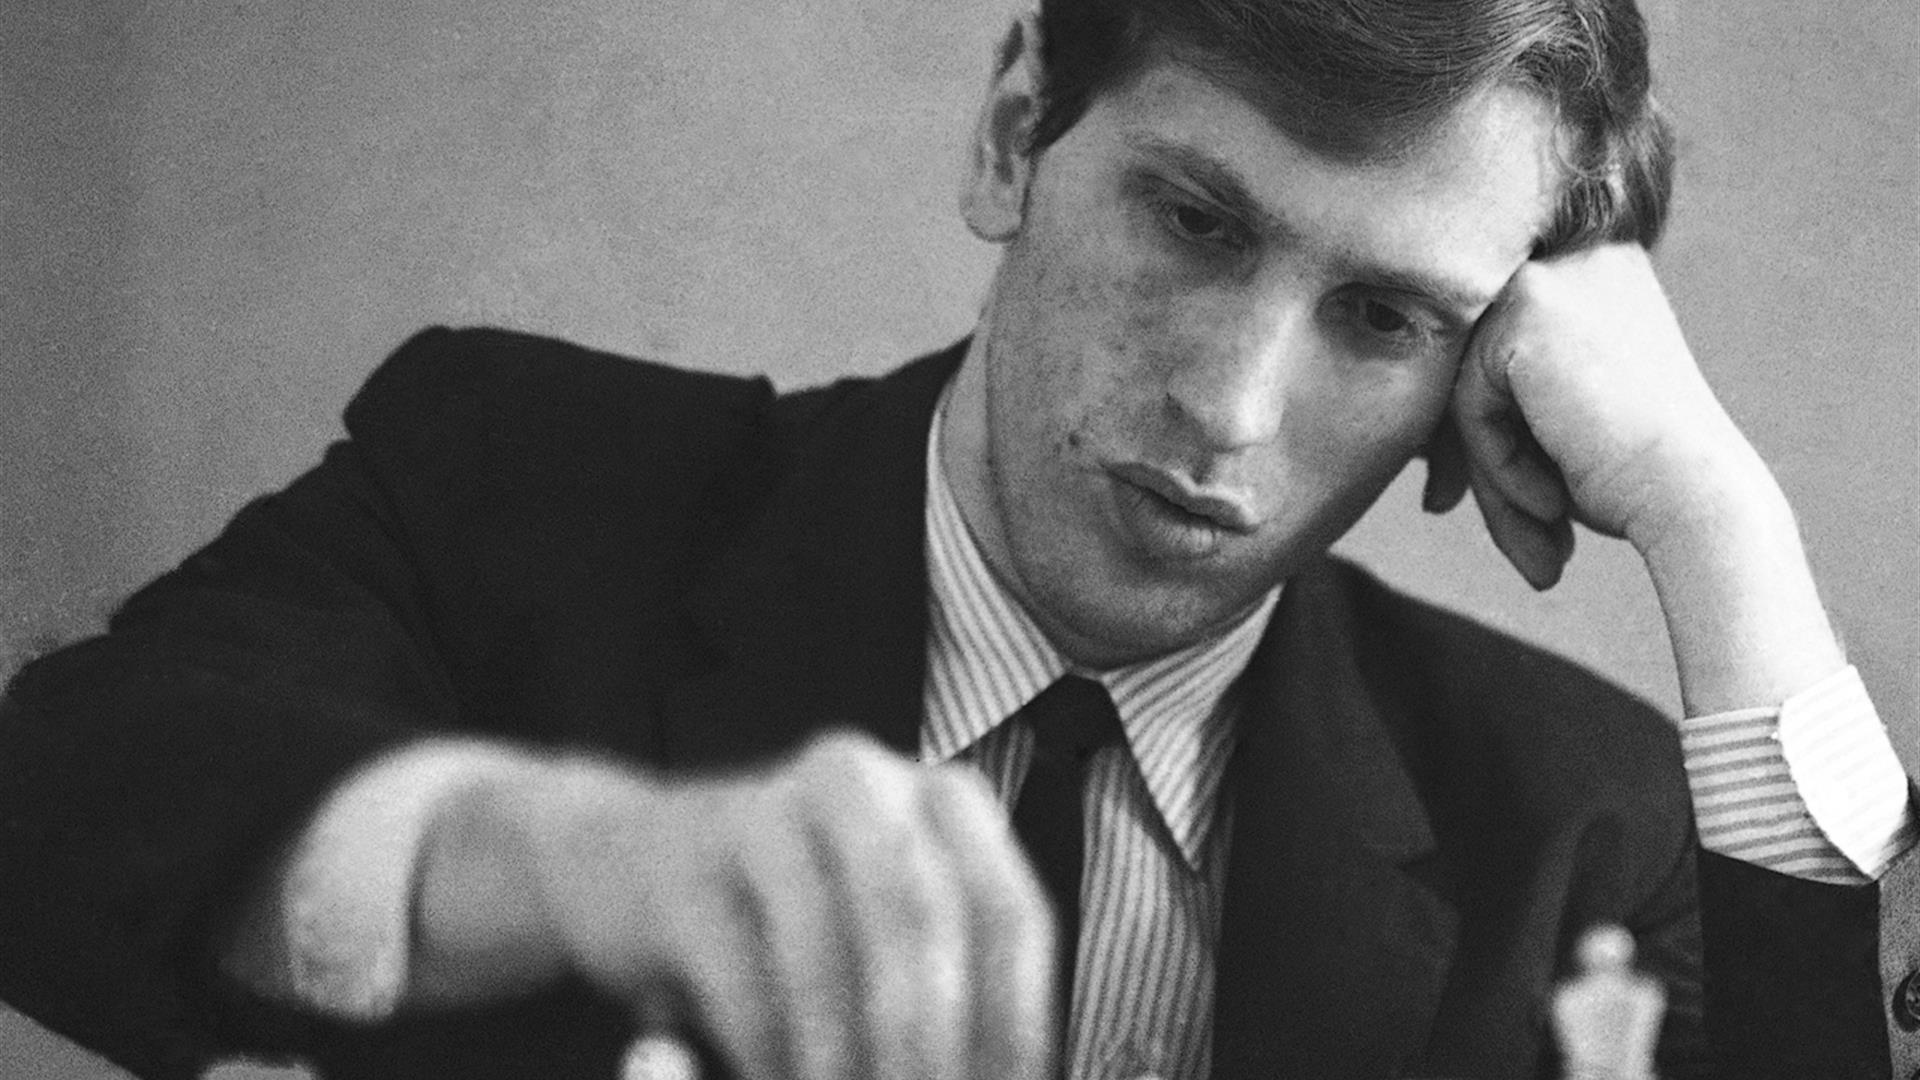 Chess champ Bobby Fischer dies at 64